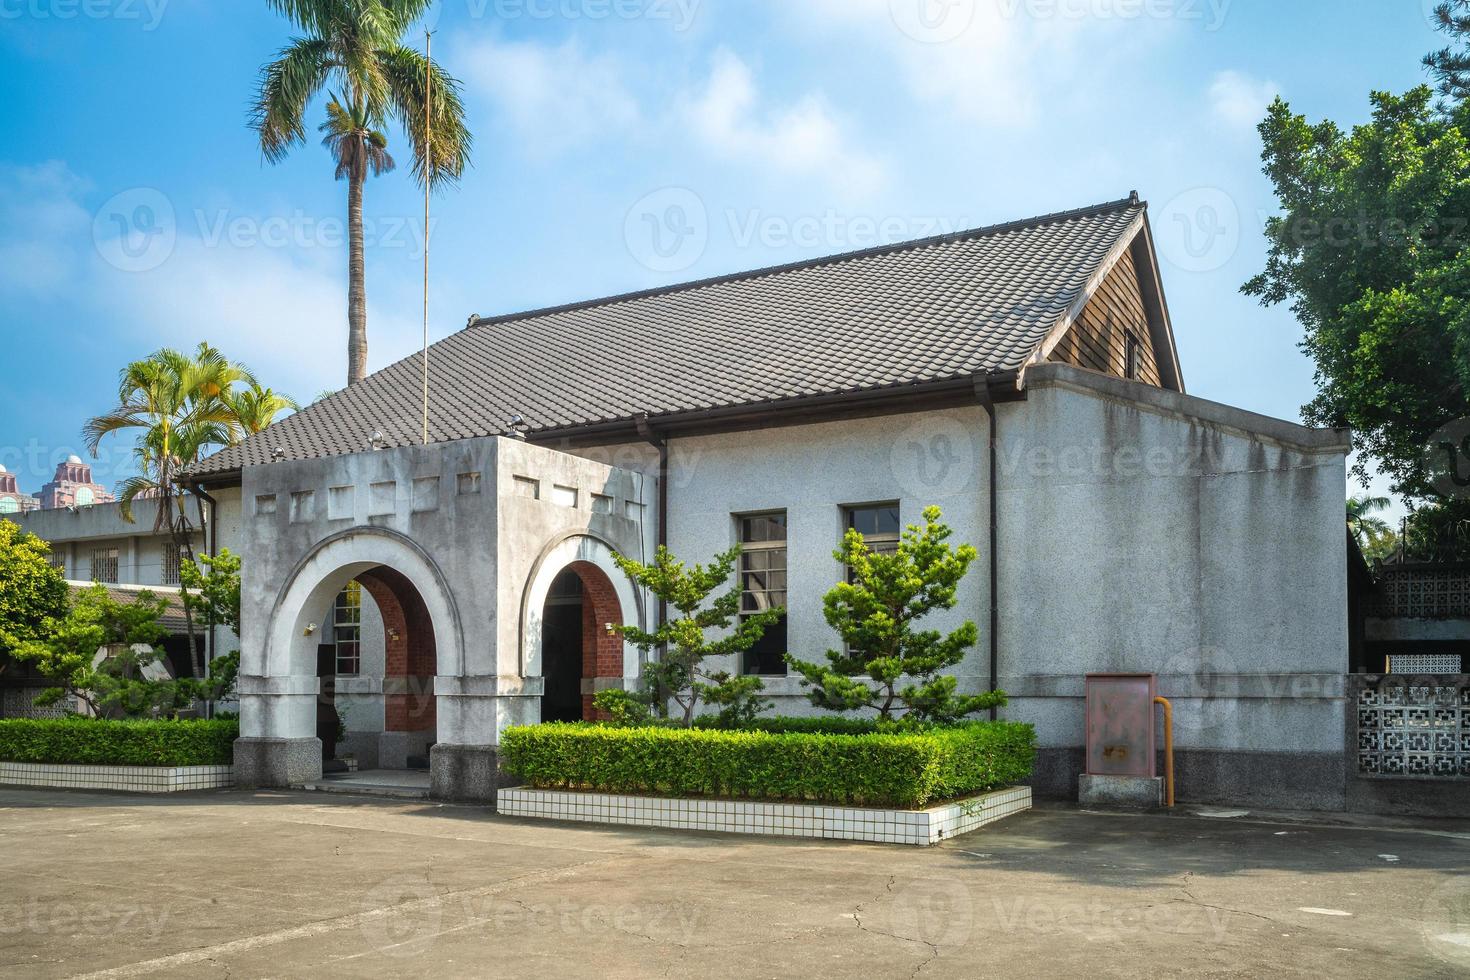 chiayi gamla fängelse, ett tidigare fängelse i Chiayi, Taiwan foto